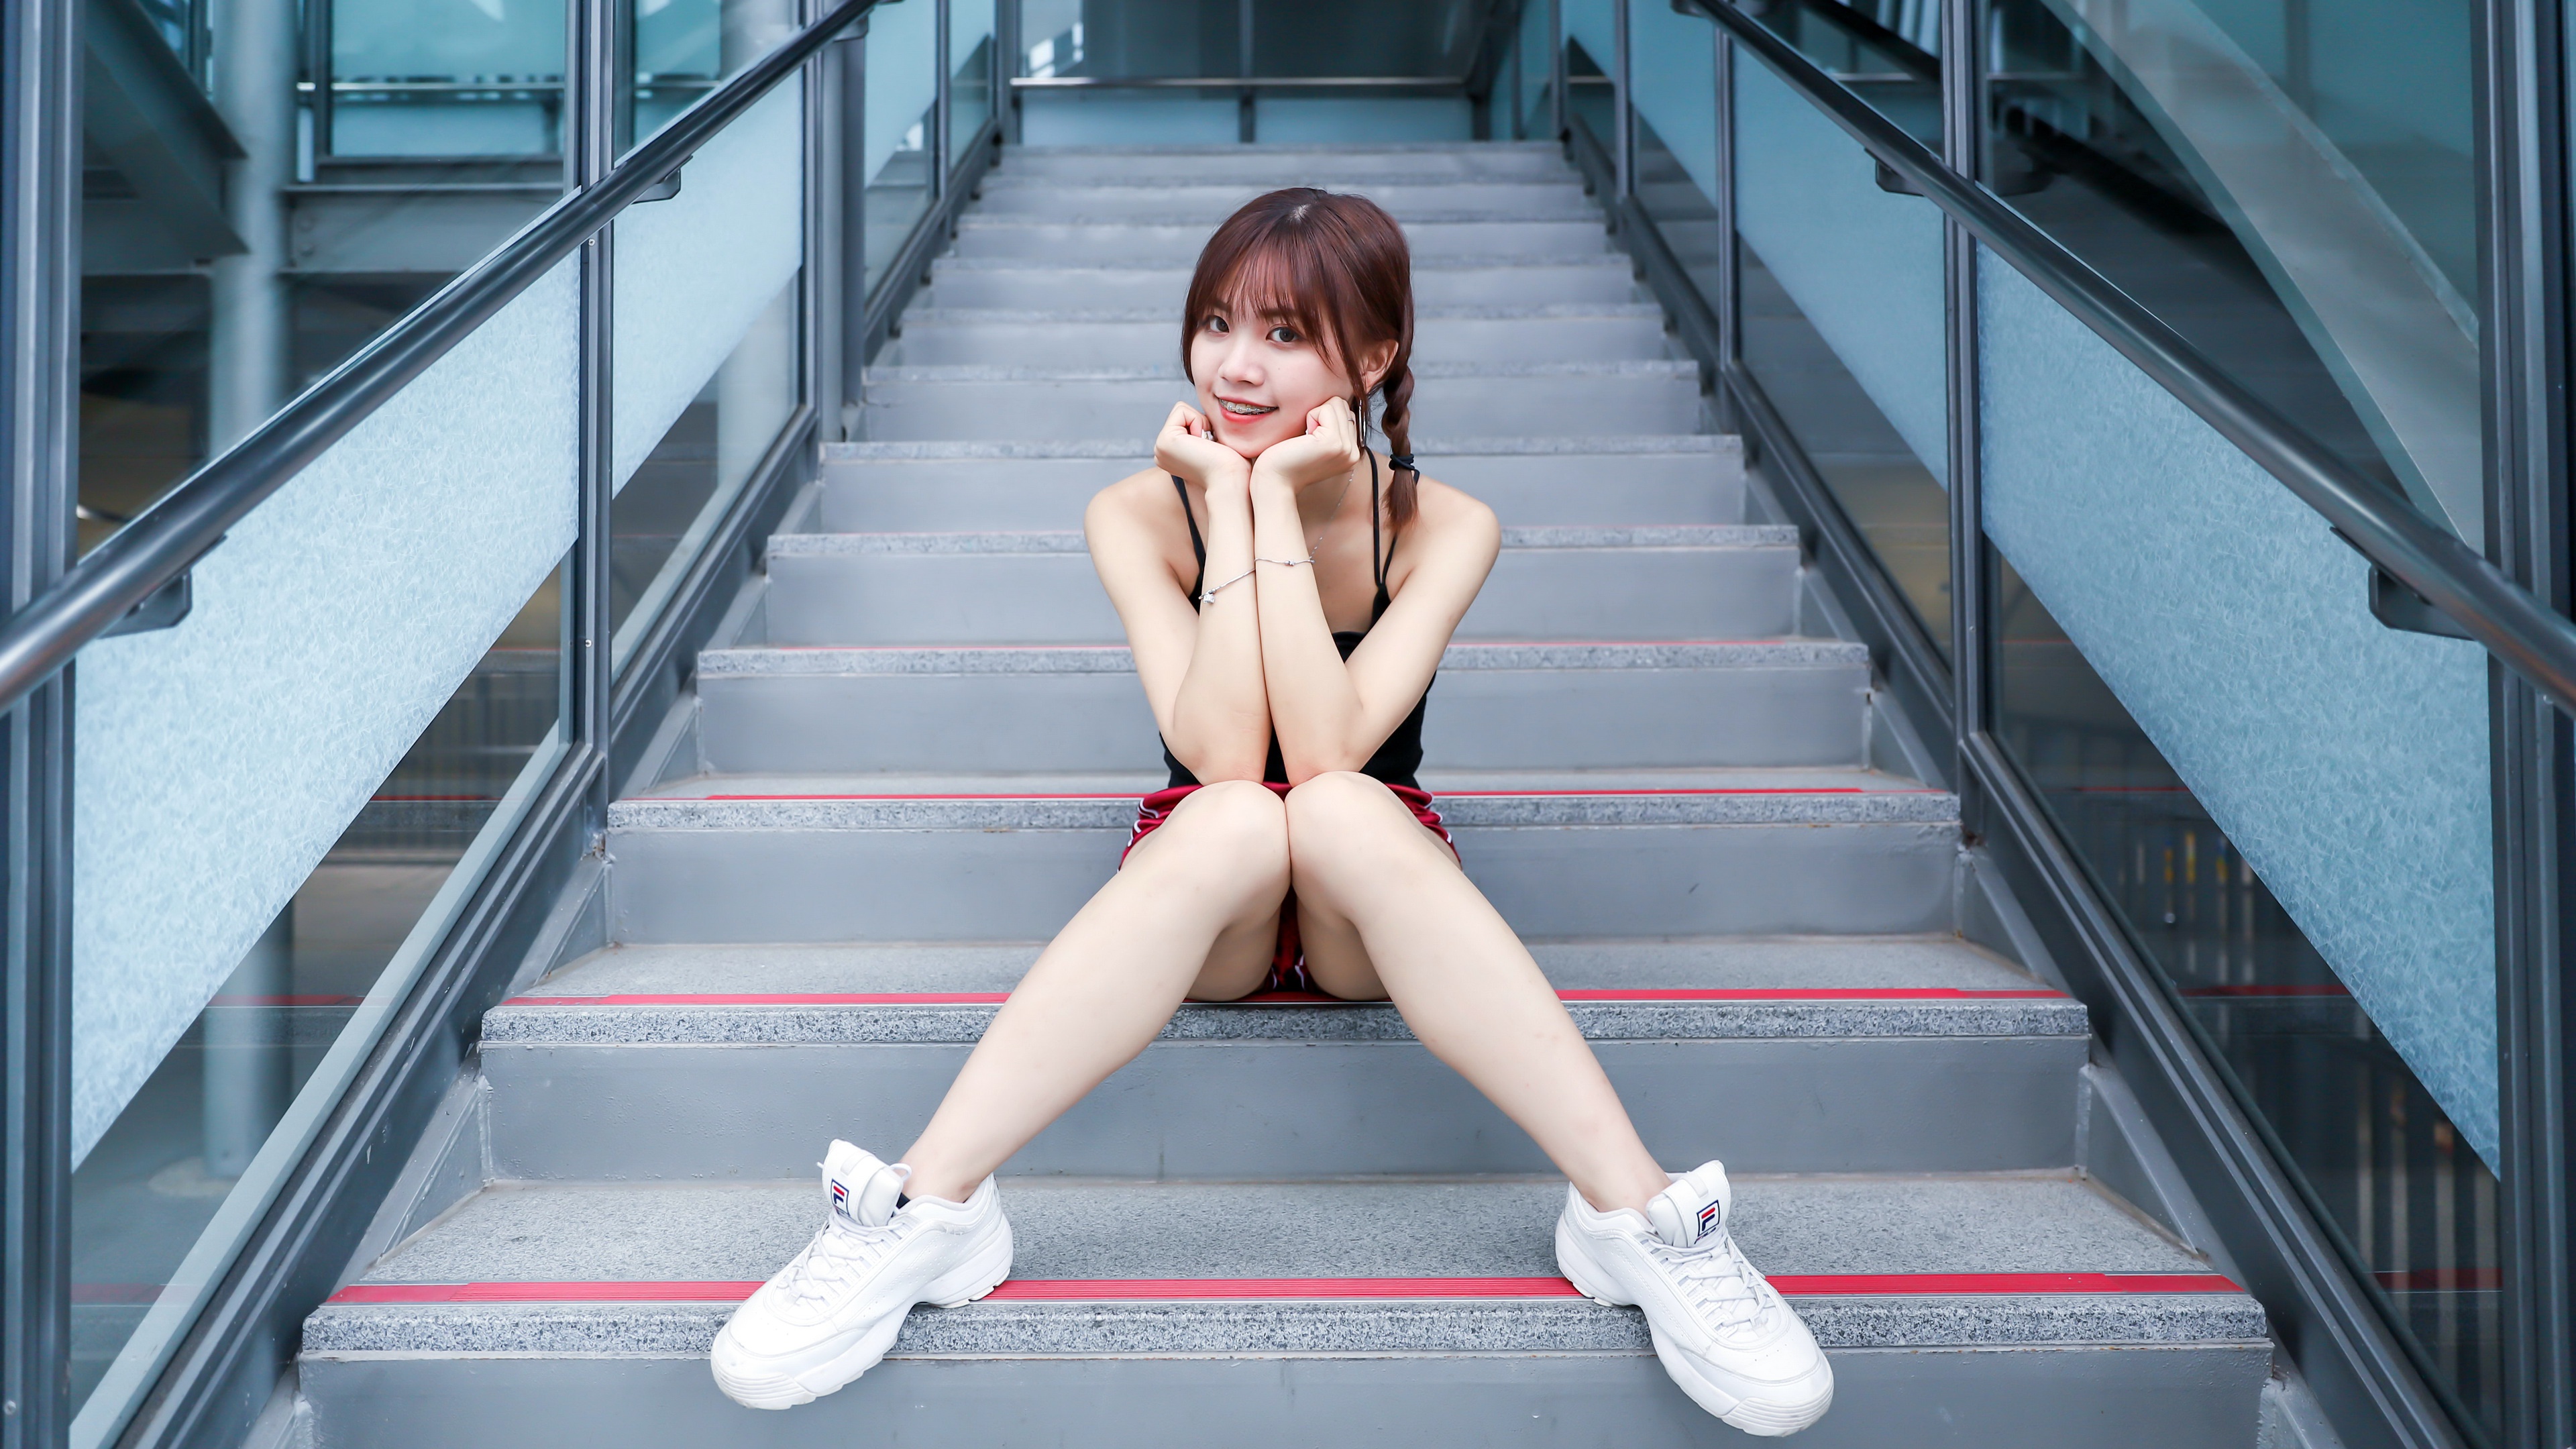 Asian Model Women Brunette Braids Dark Eyes Legs Top Tank Top Shorts Sneakers Sitting Looking At Vie 3840x2160